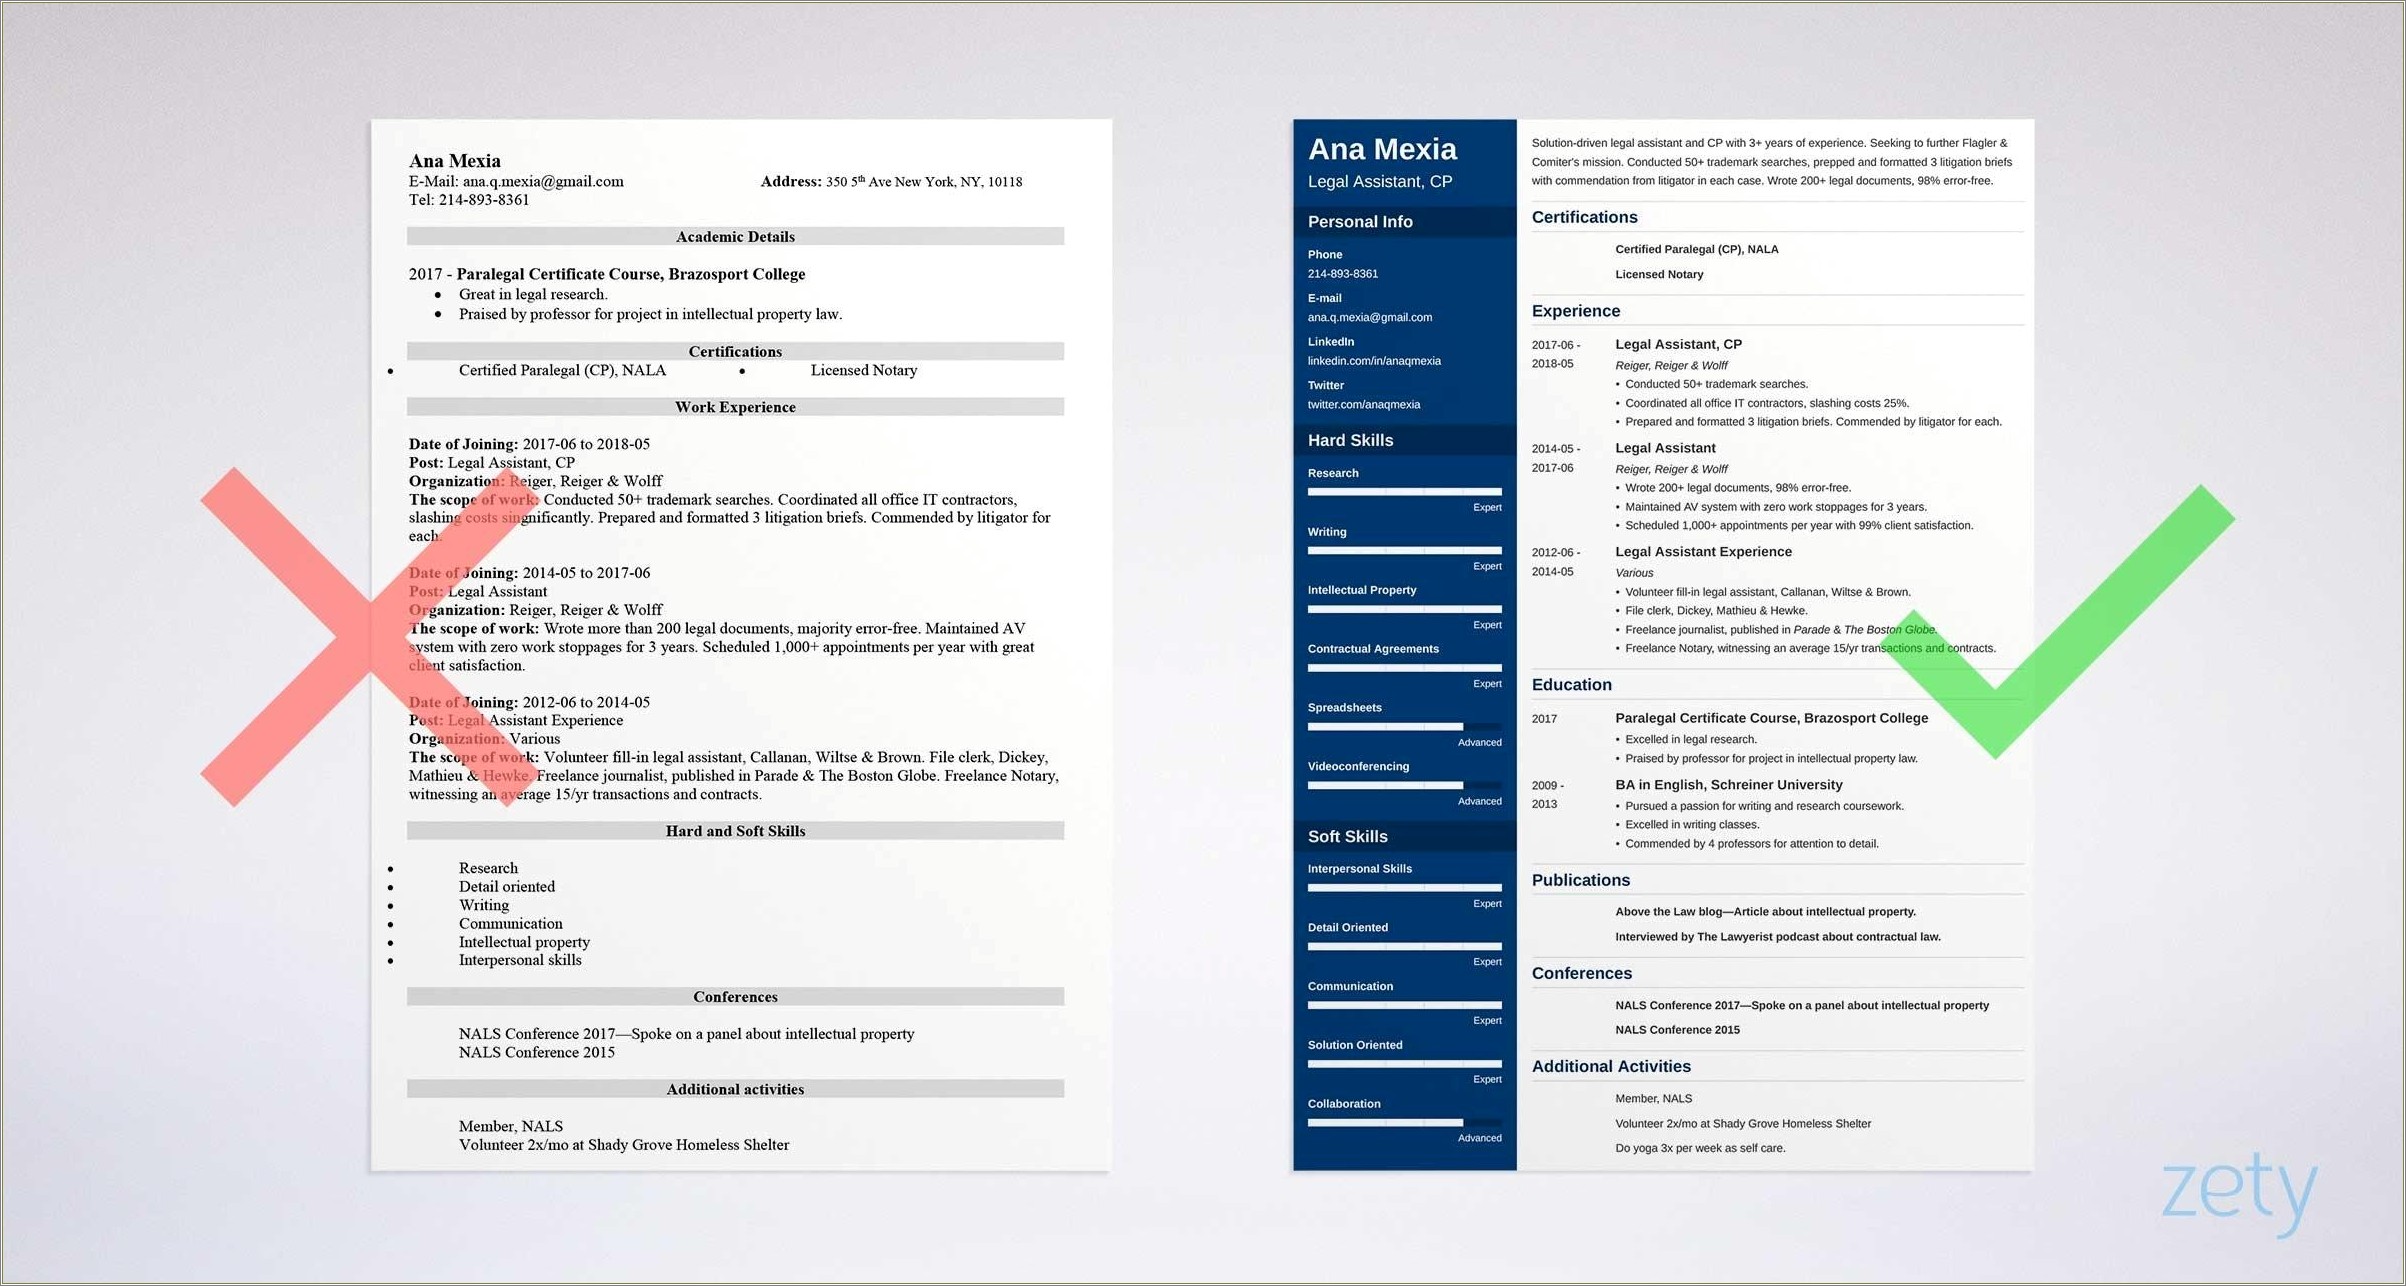 Legal Secretary Job Descriptions For Resume